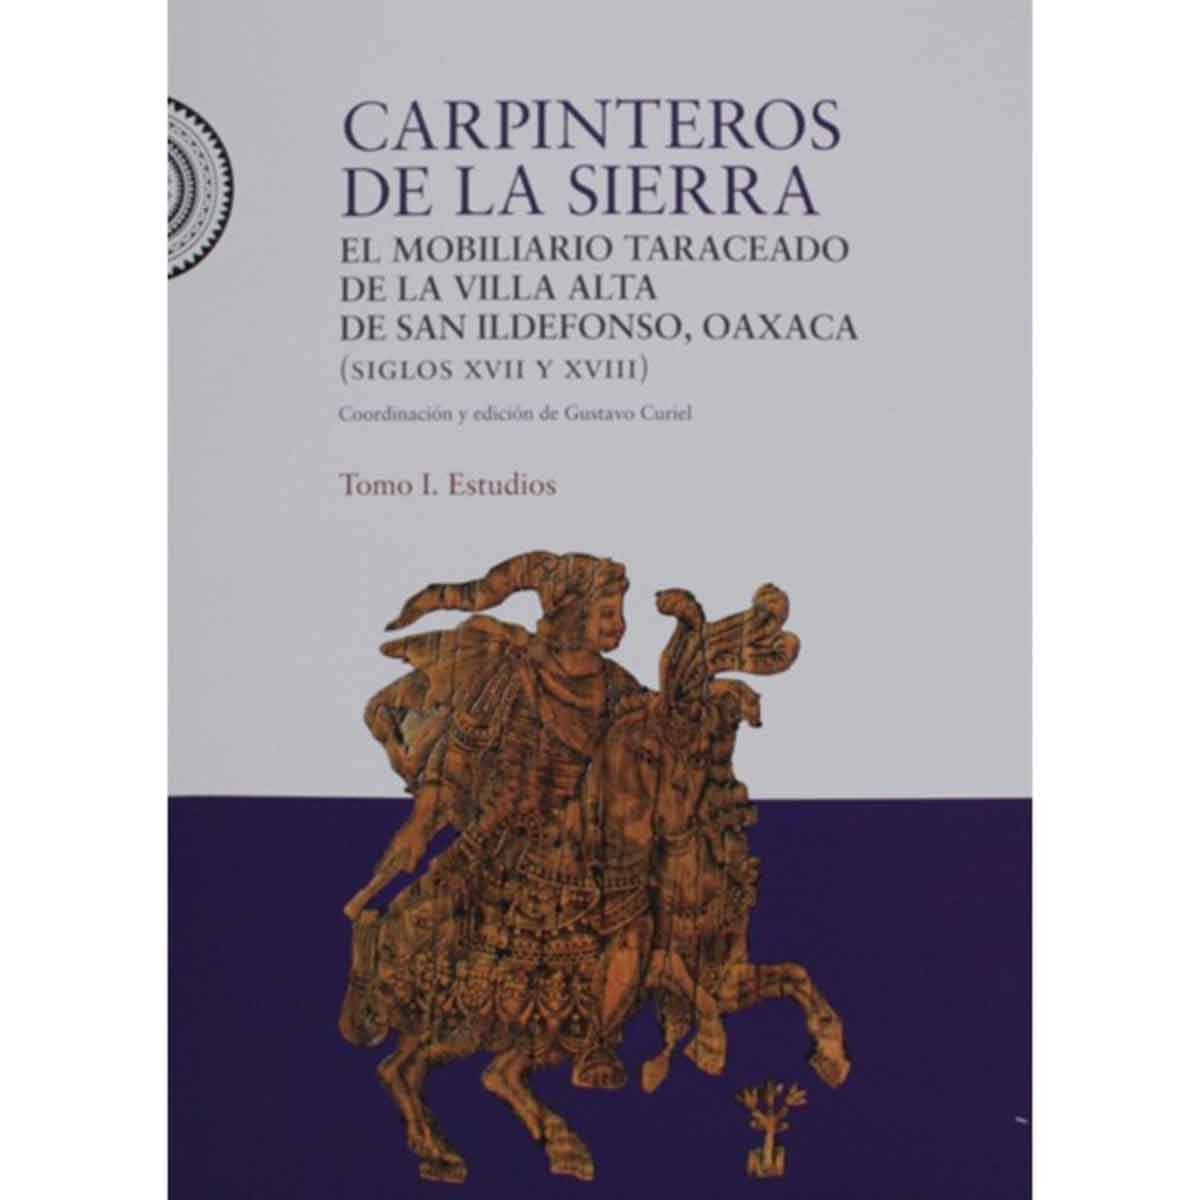 CARPINTEROS DE LA SIERRA. ESTUDIOS Y CATÁLOGO,  TOMOS I Y II